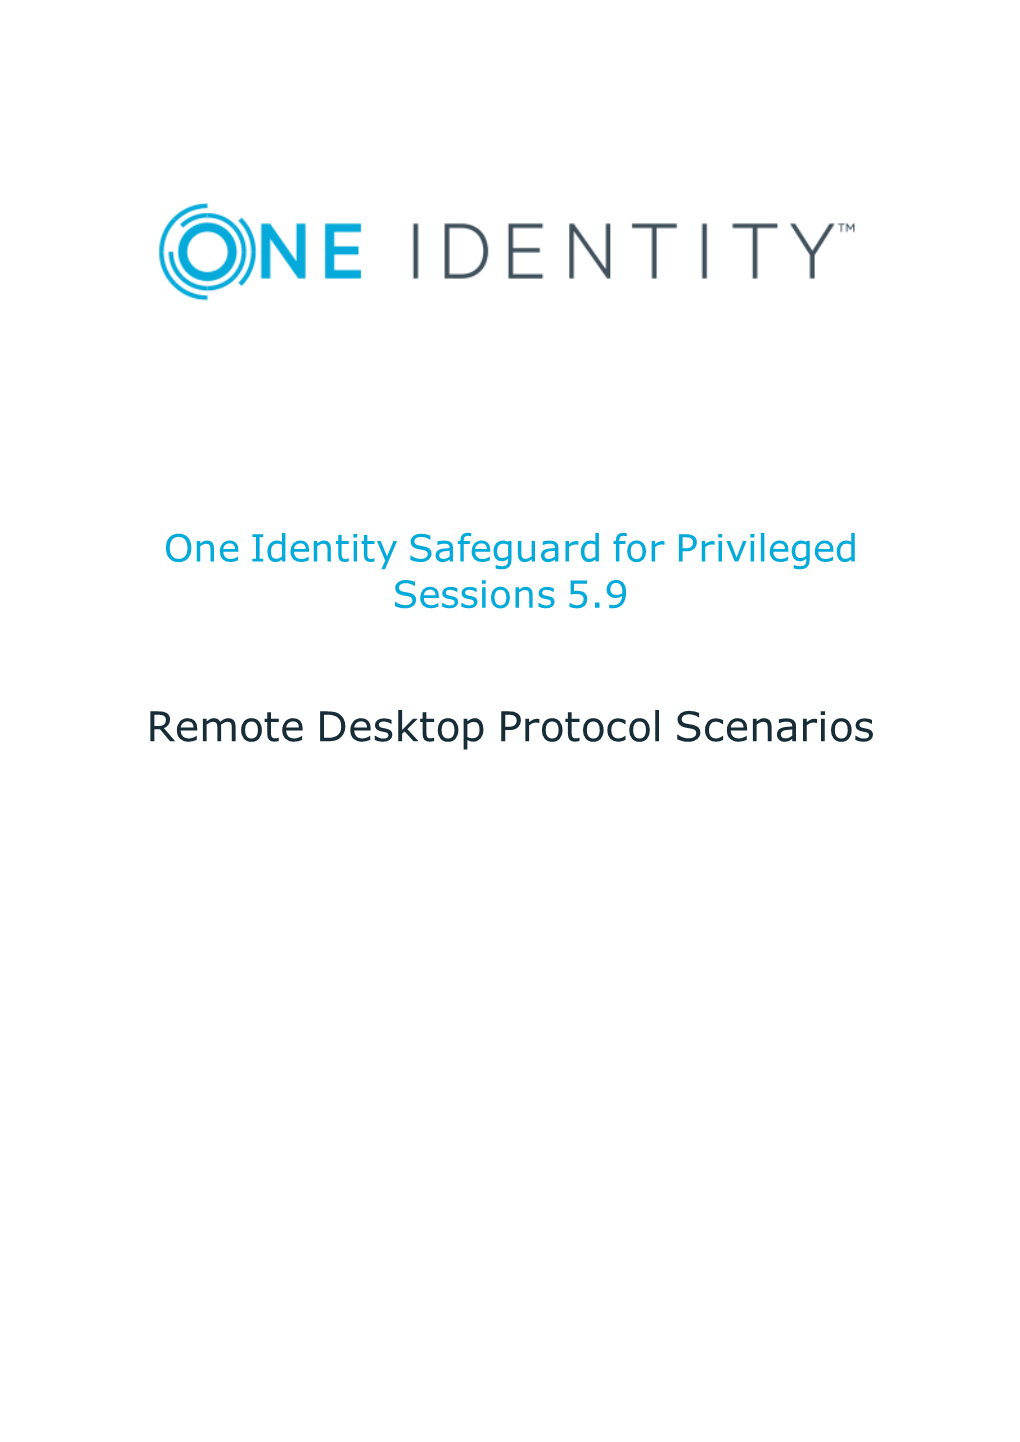 Remote Desktop Protocol Scenarios Copyright 2018 One Identity LLC